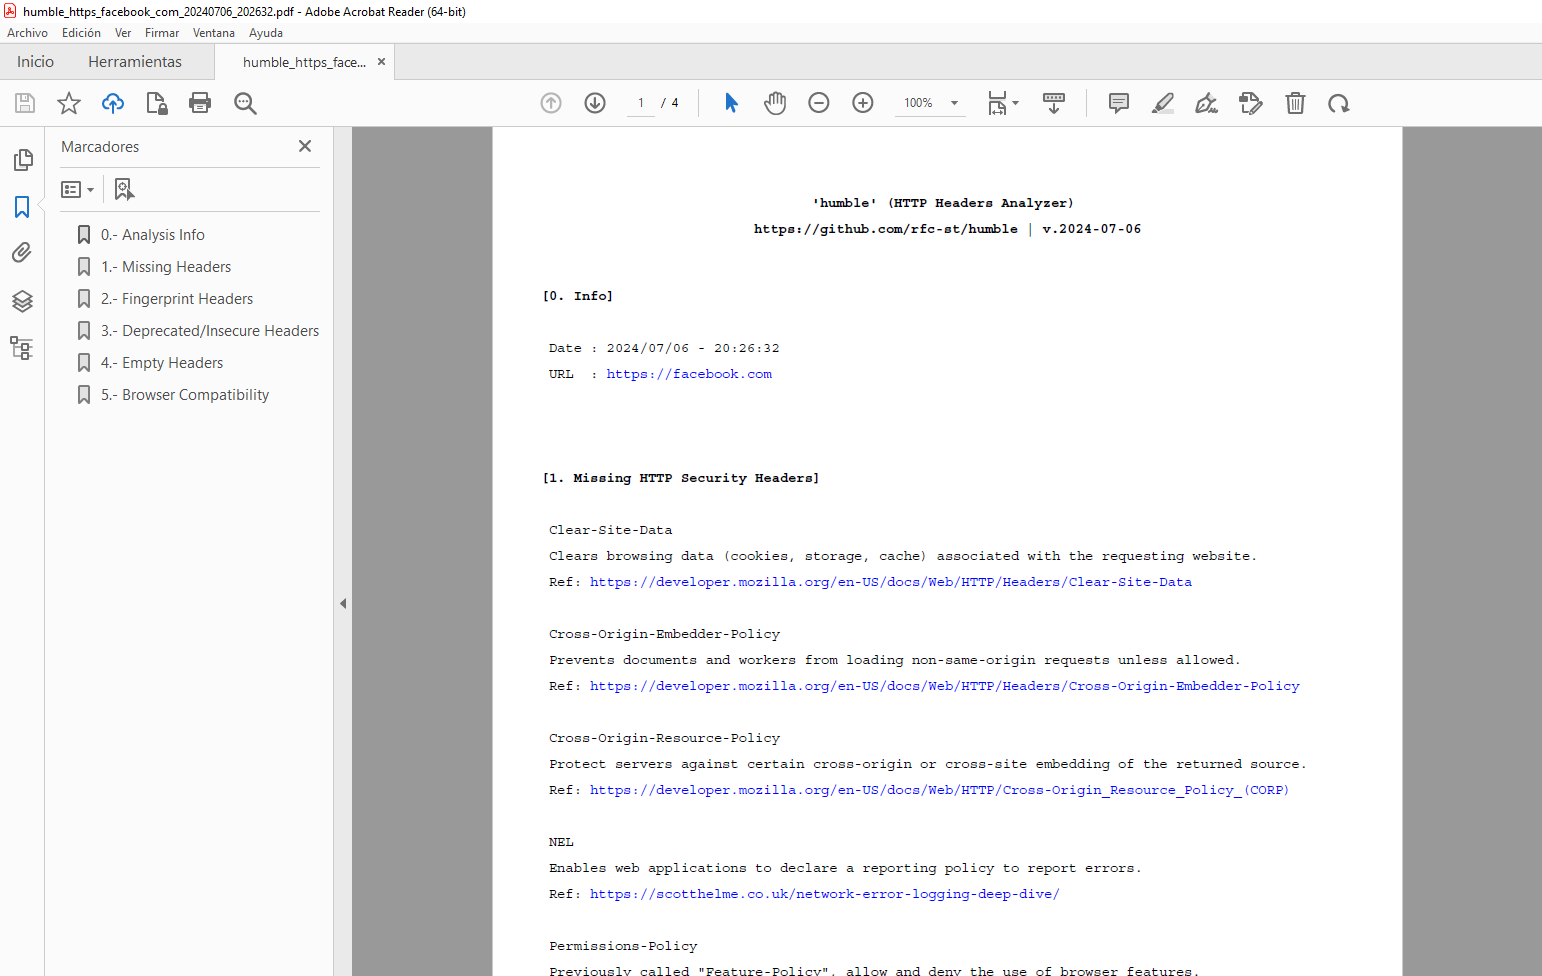 (Windows) - Detailed analysis saved as PDF